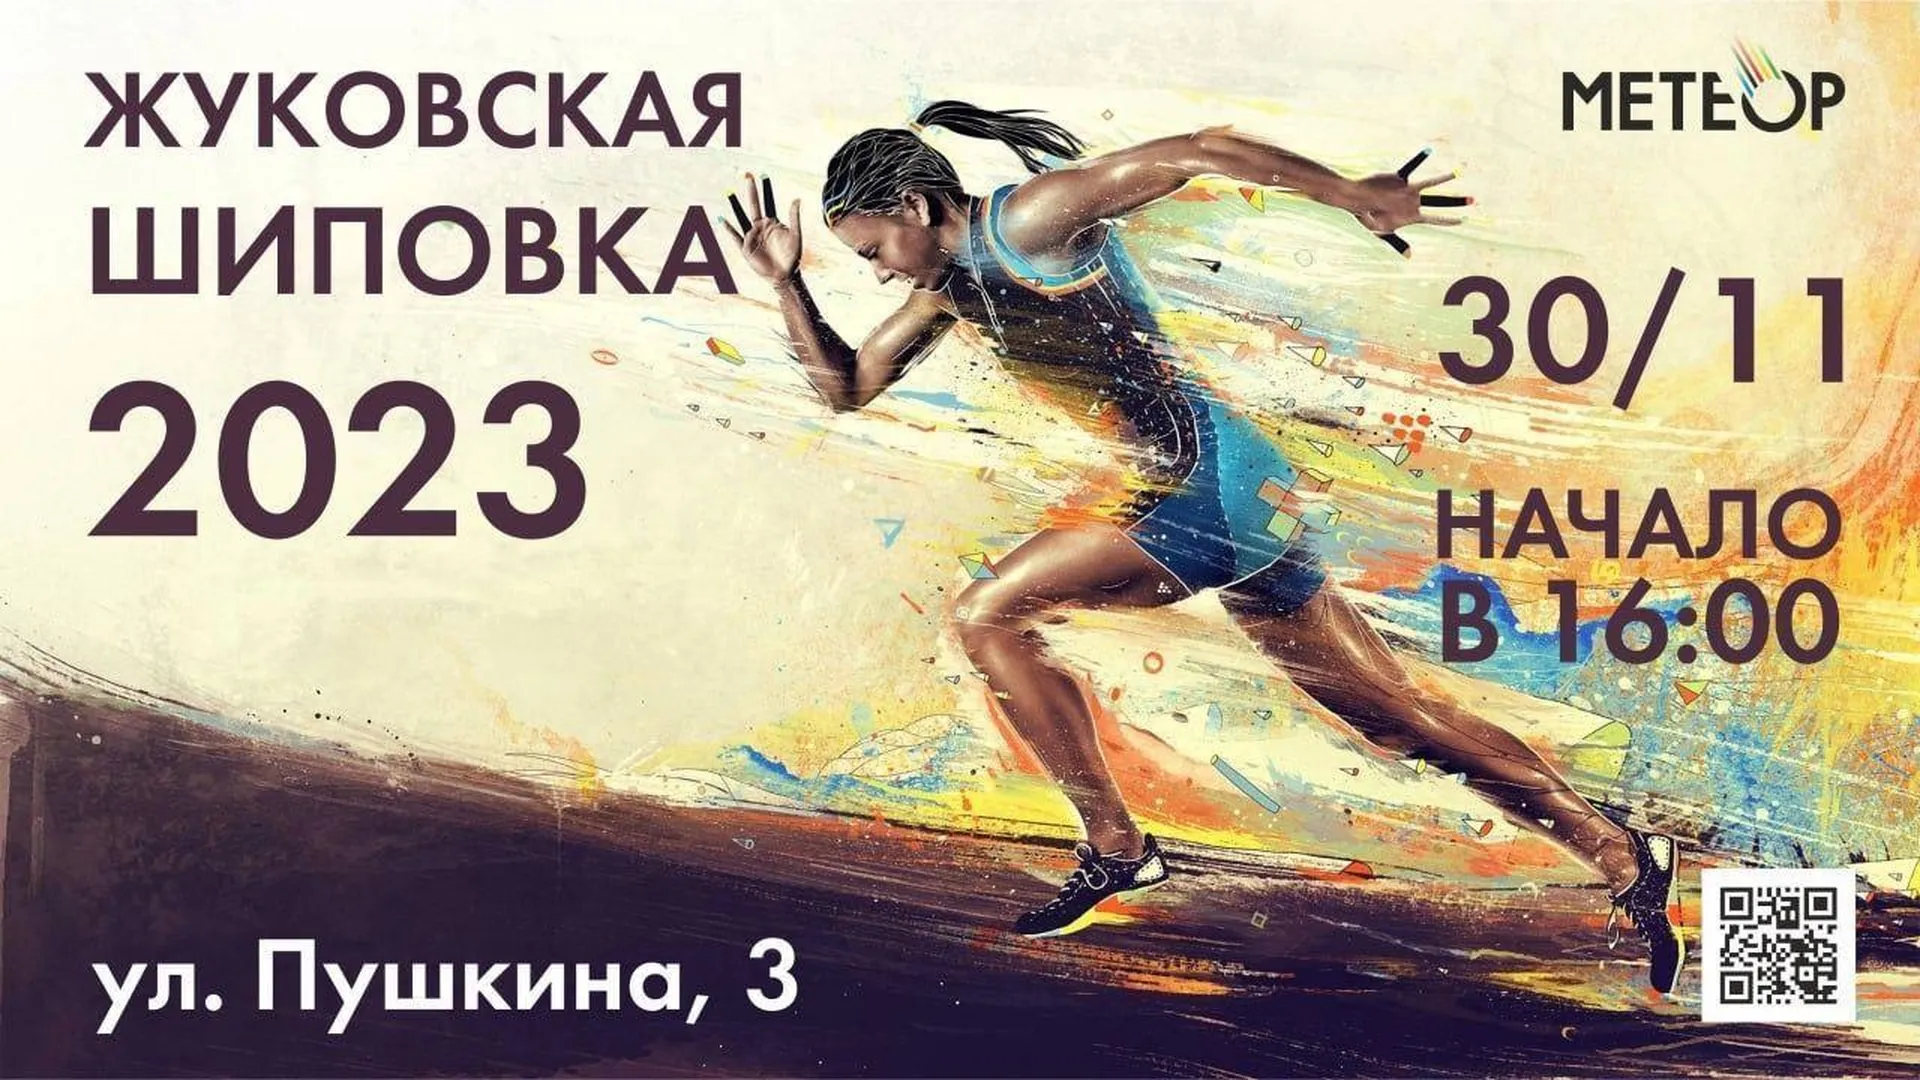 Соревнования по легкой атлетике «Жуковская шиповка» пройдут в четверг в Жуковском